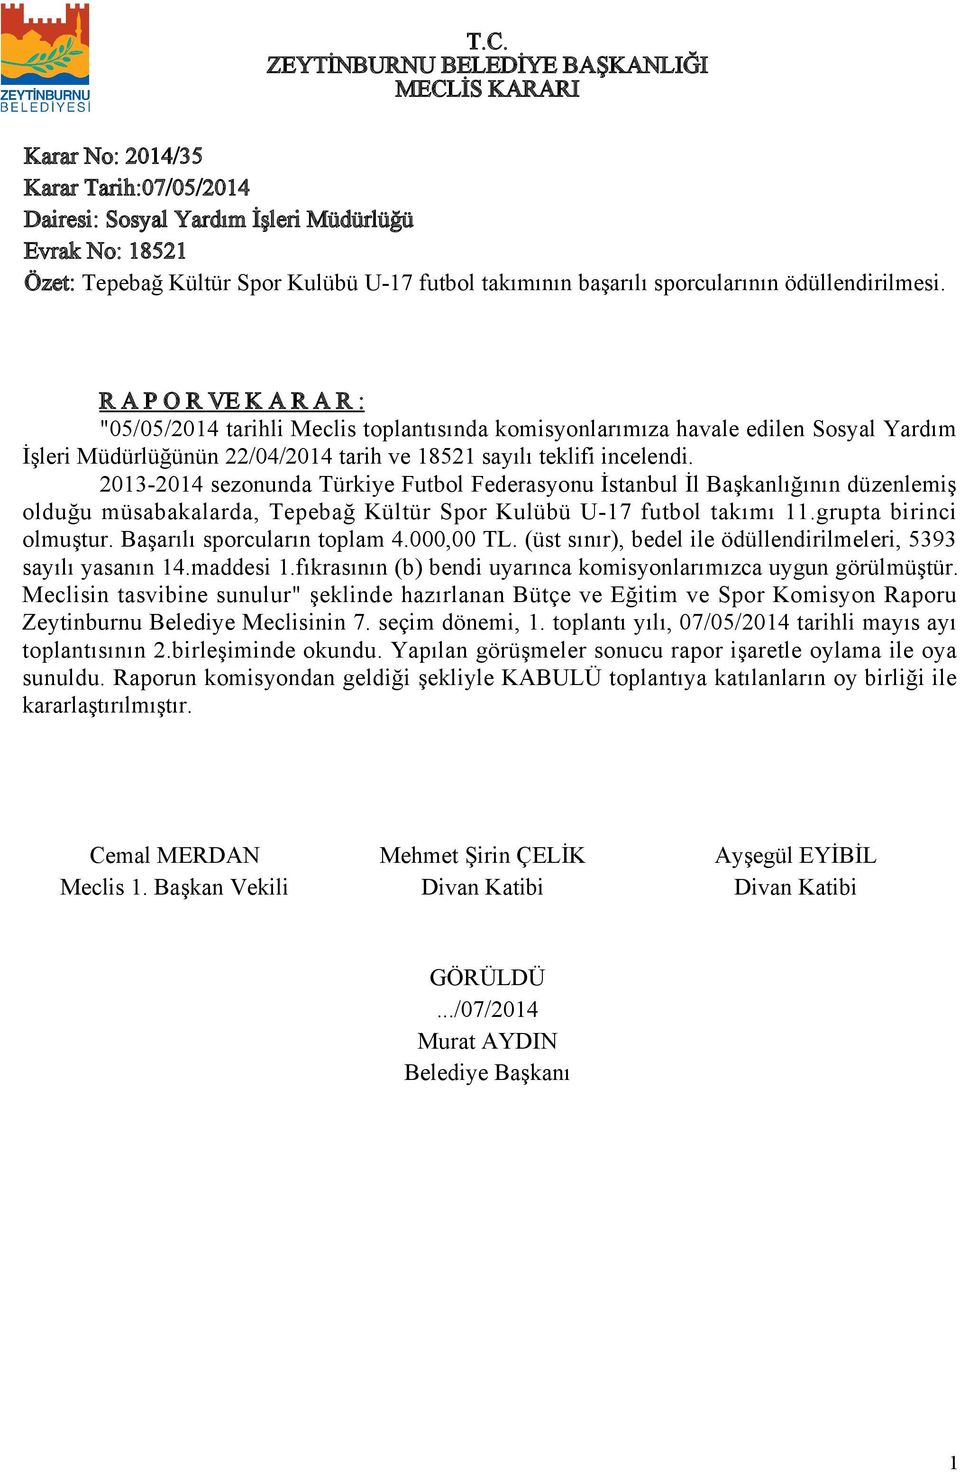 203-204 sezonunda Türkiye Futbol Federasyonu İstanbul İl Başkanlığının düzenlemiş olduğu müsabakalarda, Tepebağ Kültür Spor Kulübü U-7 futbol takımı.grupta birinci olmuştur.